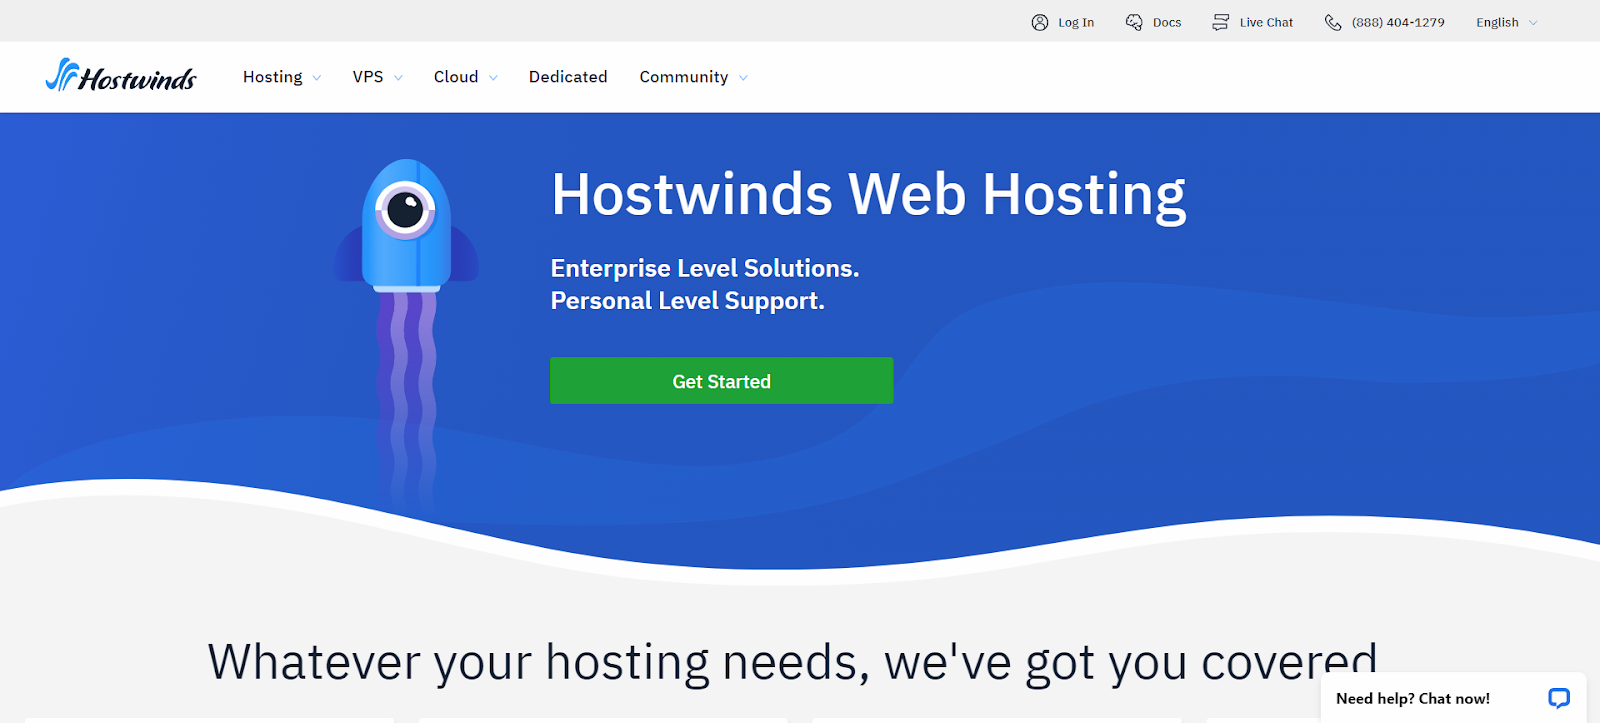 A screenshot of Hostwinds' website